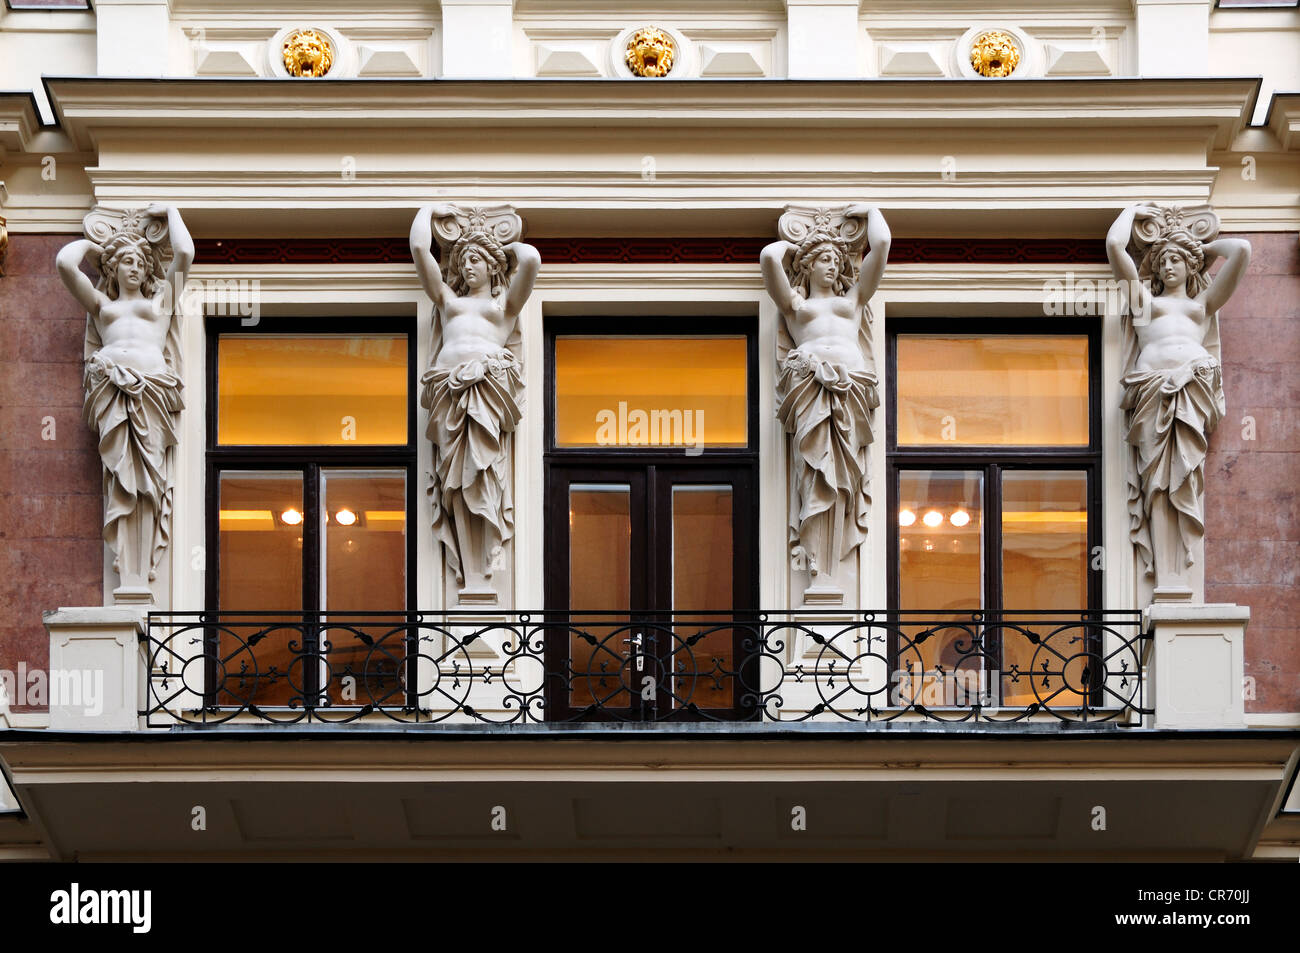 Vier Carriatides auf dem Balkon eines wohlhabenden bürgerlichen Hauses, des 19. Jahrhunderts Kärntnerstraße 5, Wien, Austria, Europe Stockfoto